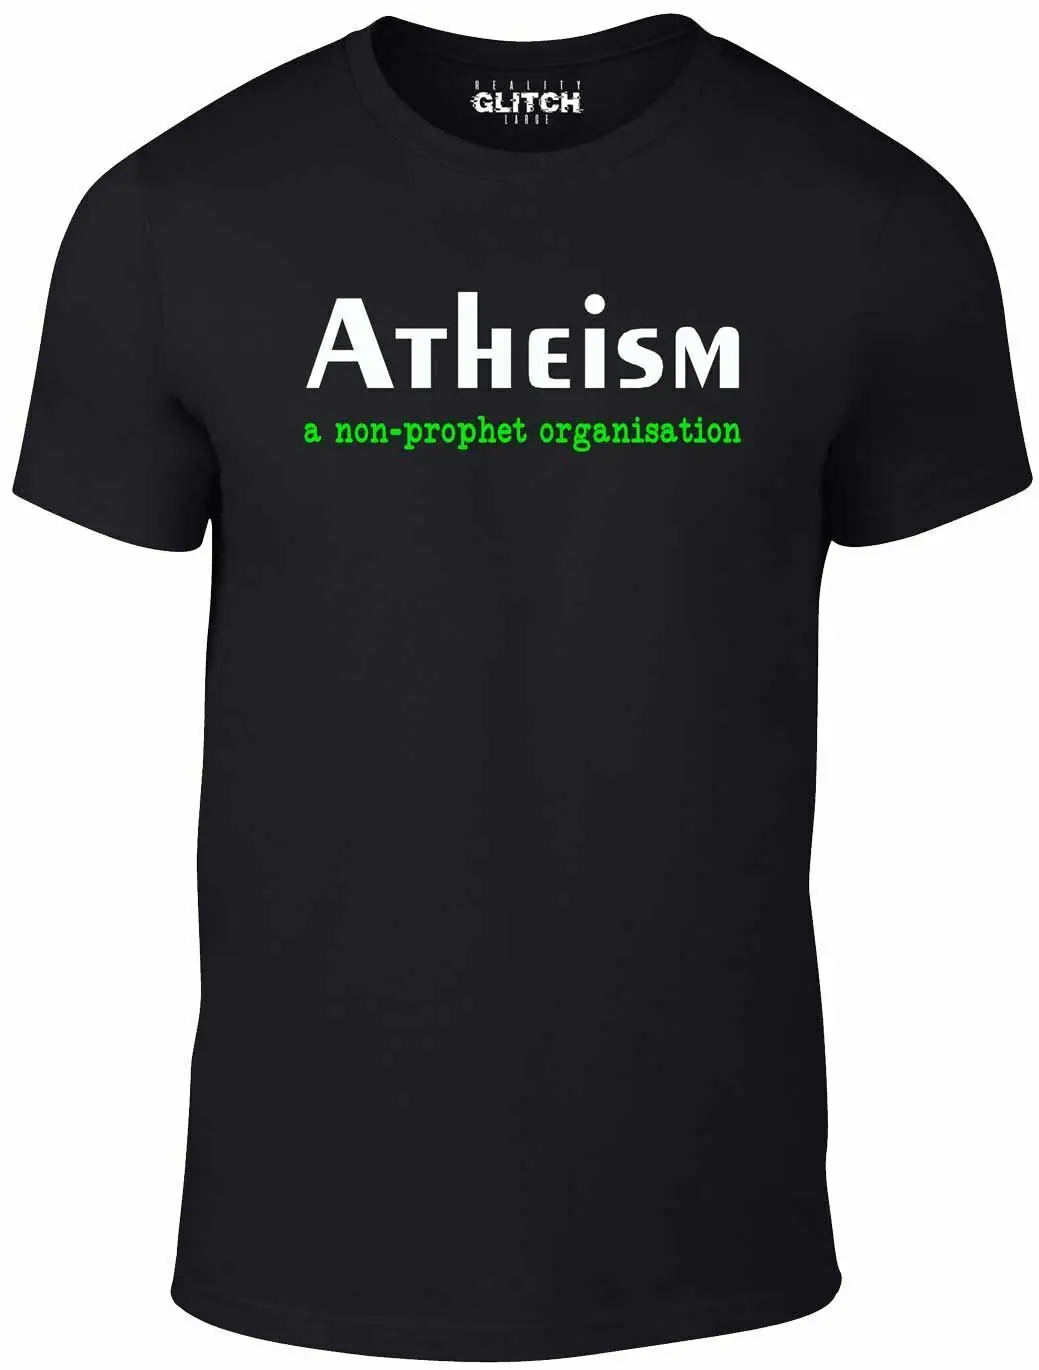 Мужская футболка с атеизмом - Забавная религия, Бог-атеист, вера Докинза, пророк